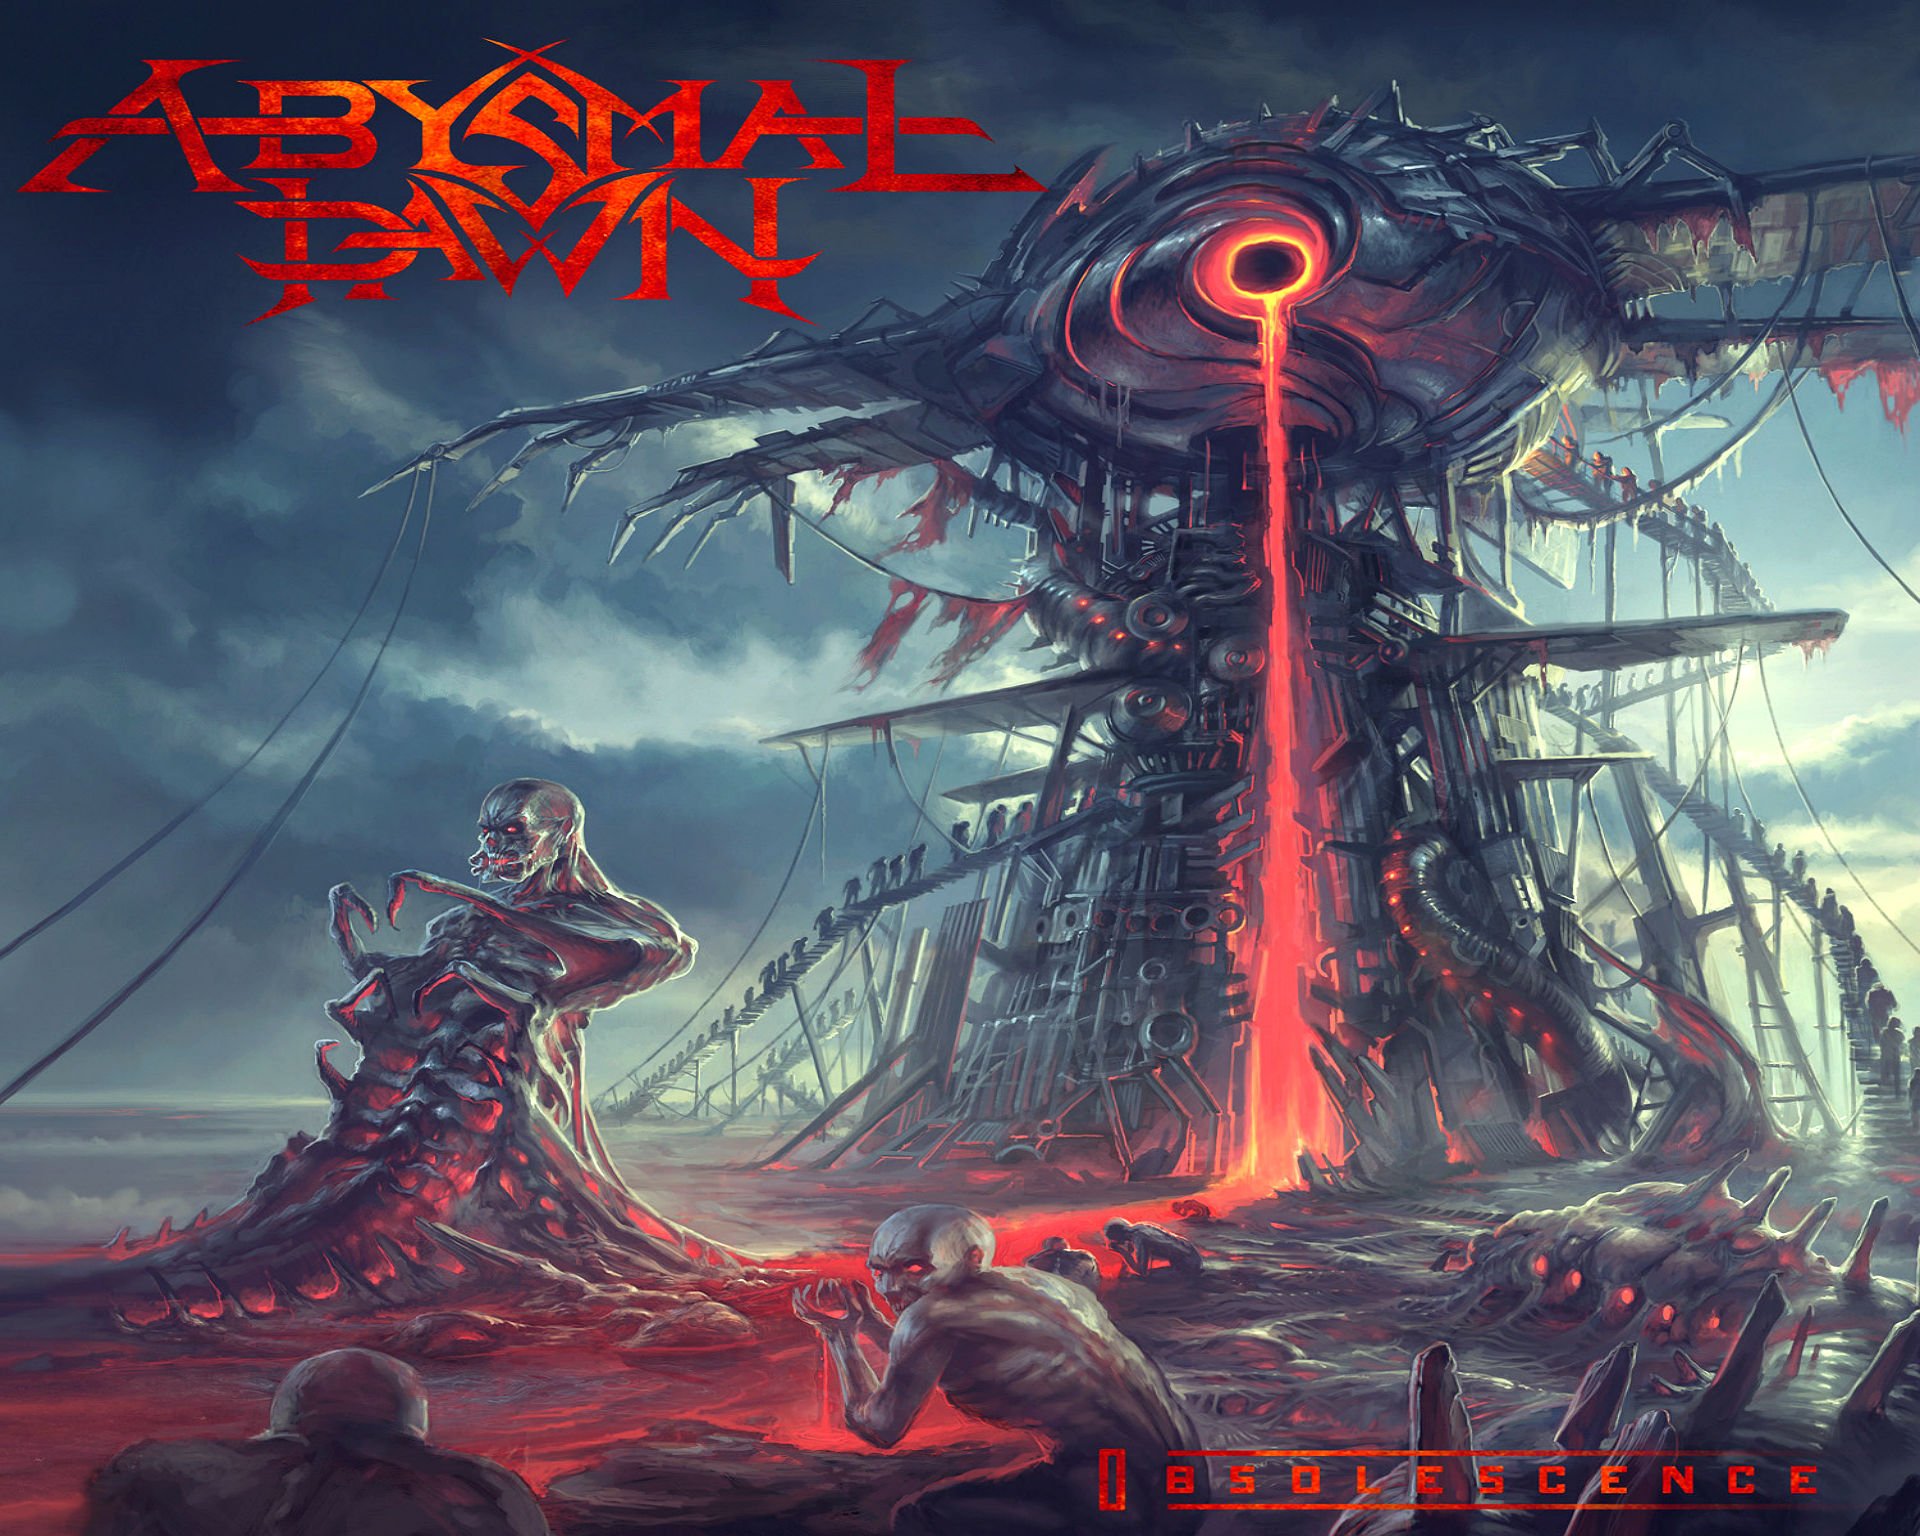 abysmal, Dawn, Death, Metal, Heavy, 1adawn, Dark, Evil, Demon, Skull